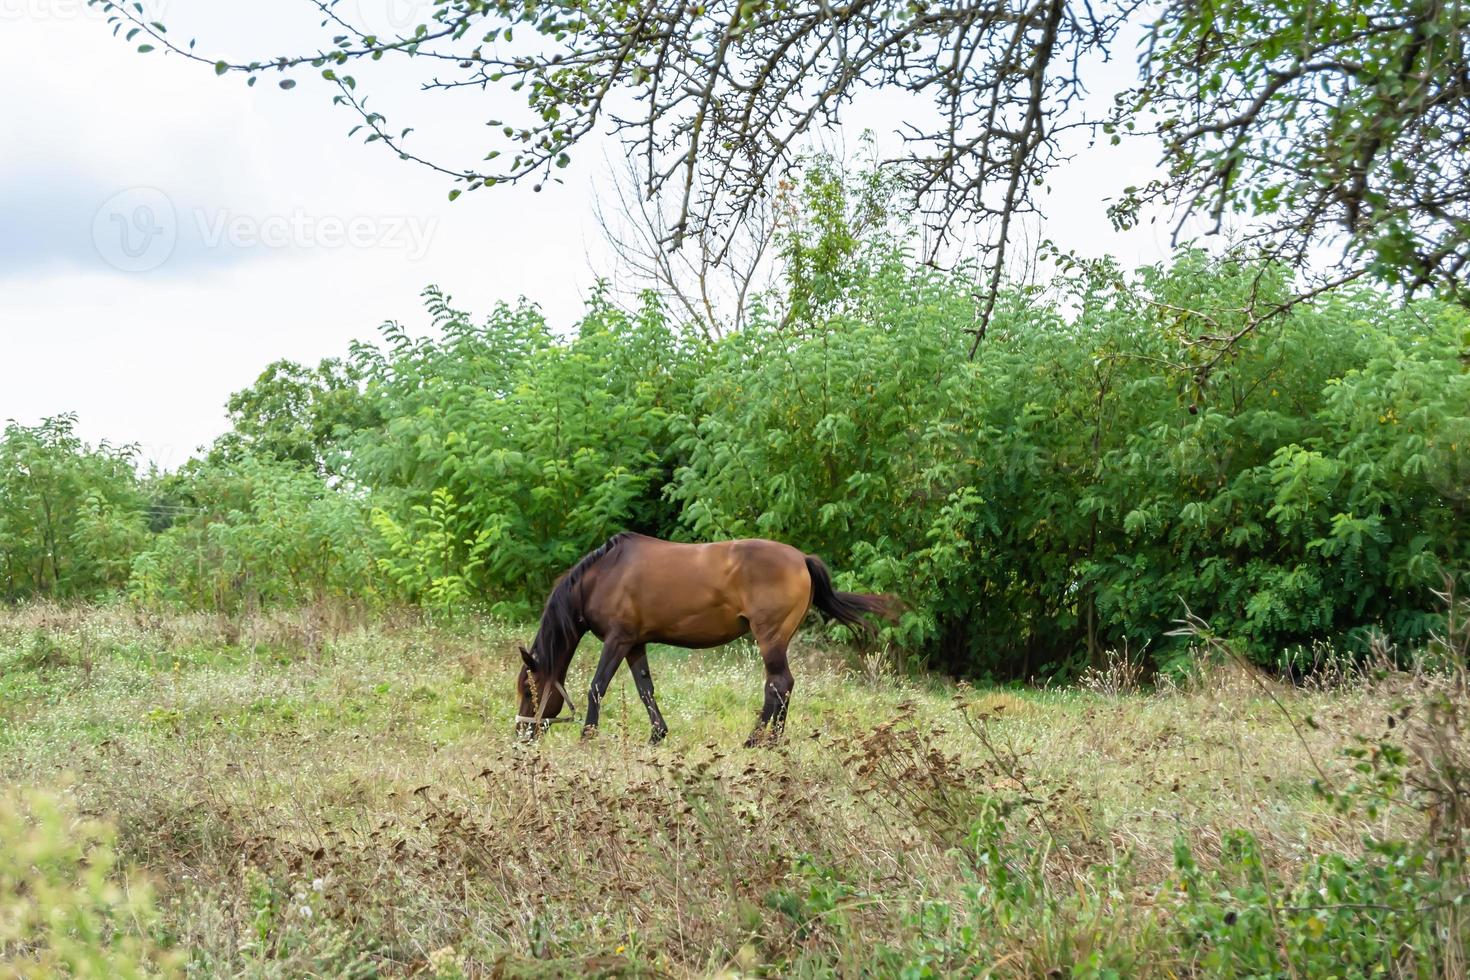 bellissimo stallone selvaggio cavallo marrone sul prato fiorito estivo foto